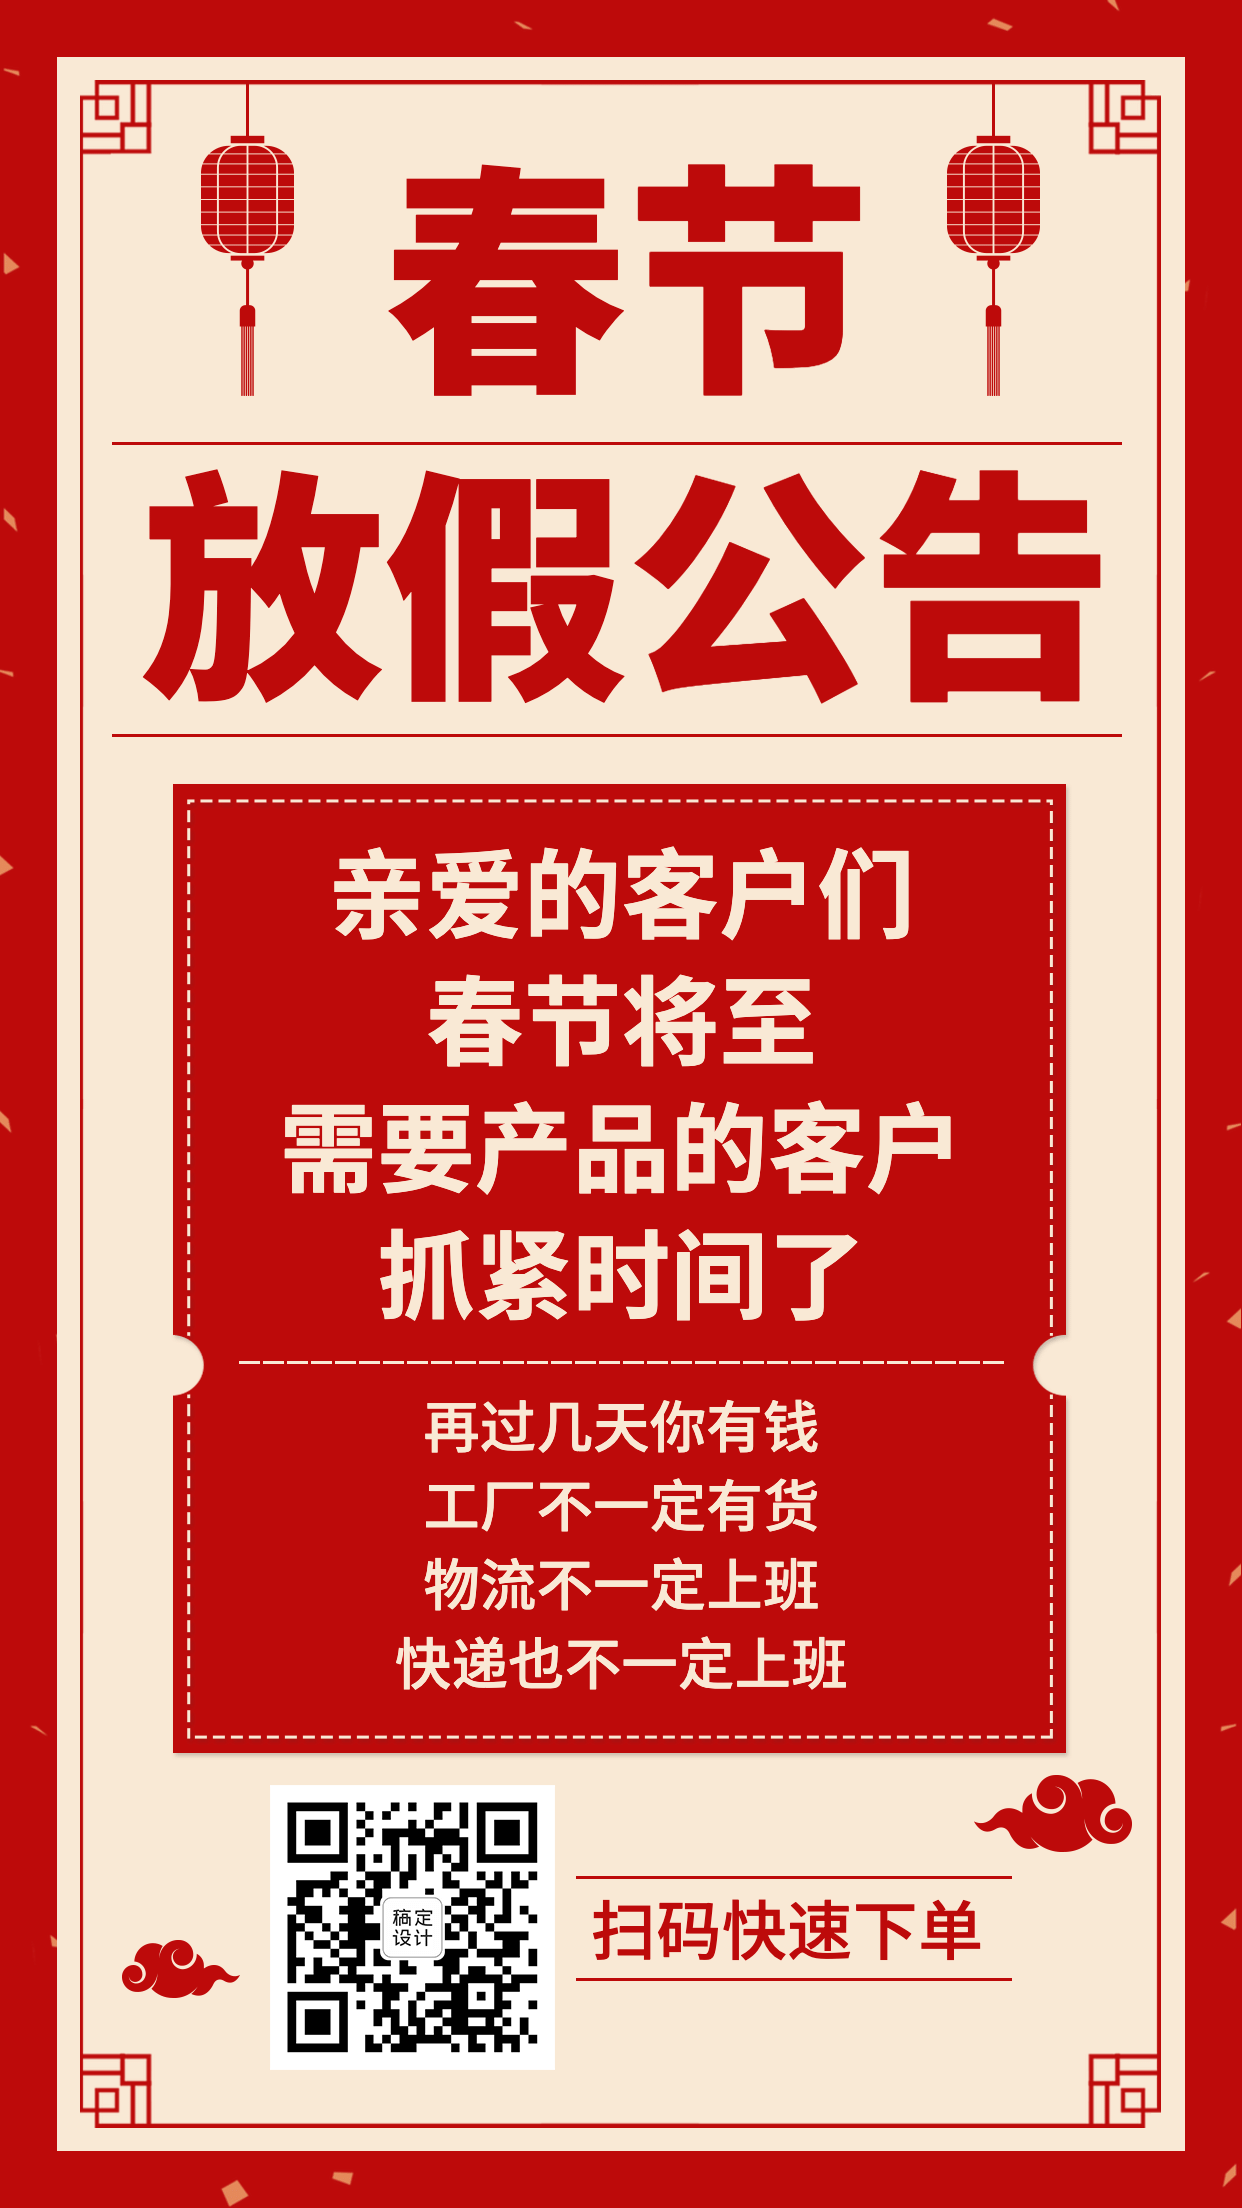 春节放假通知公告灯笼红色大字海报预览效果